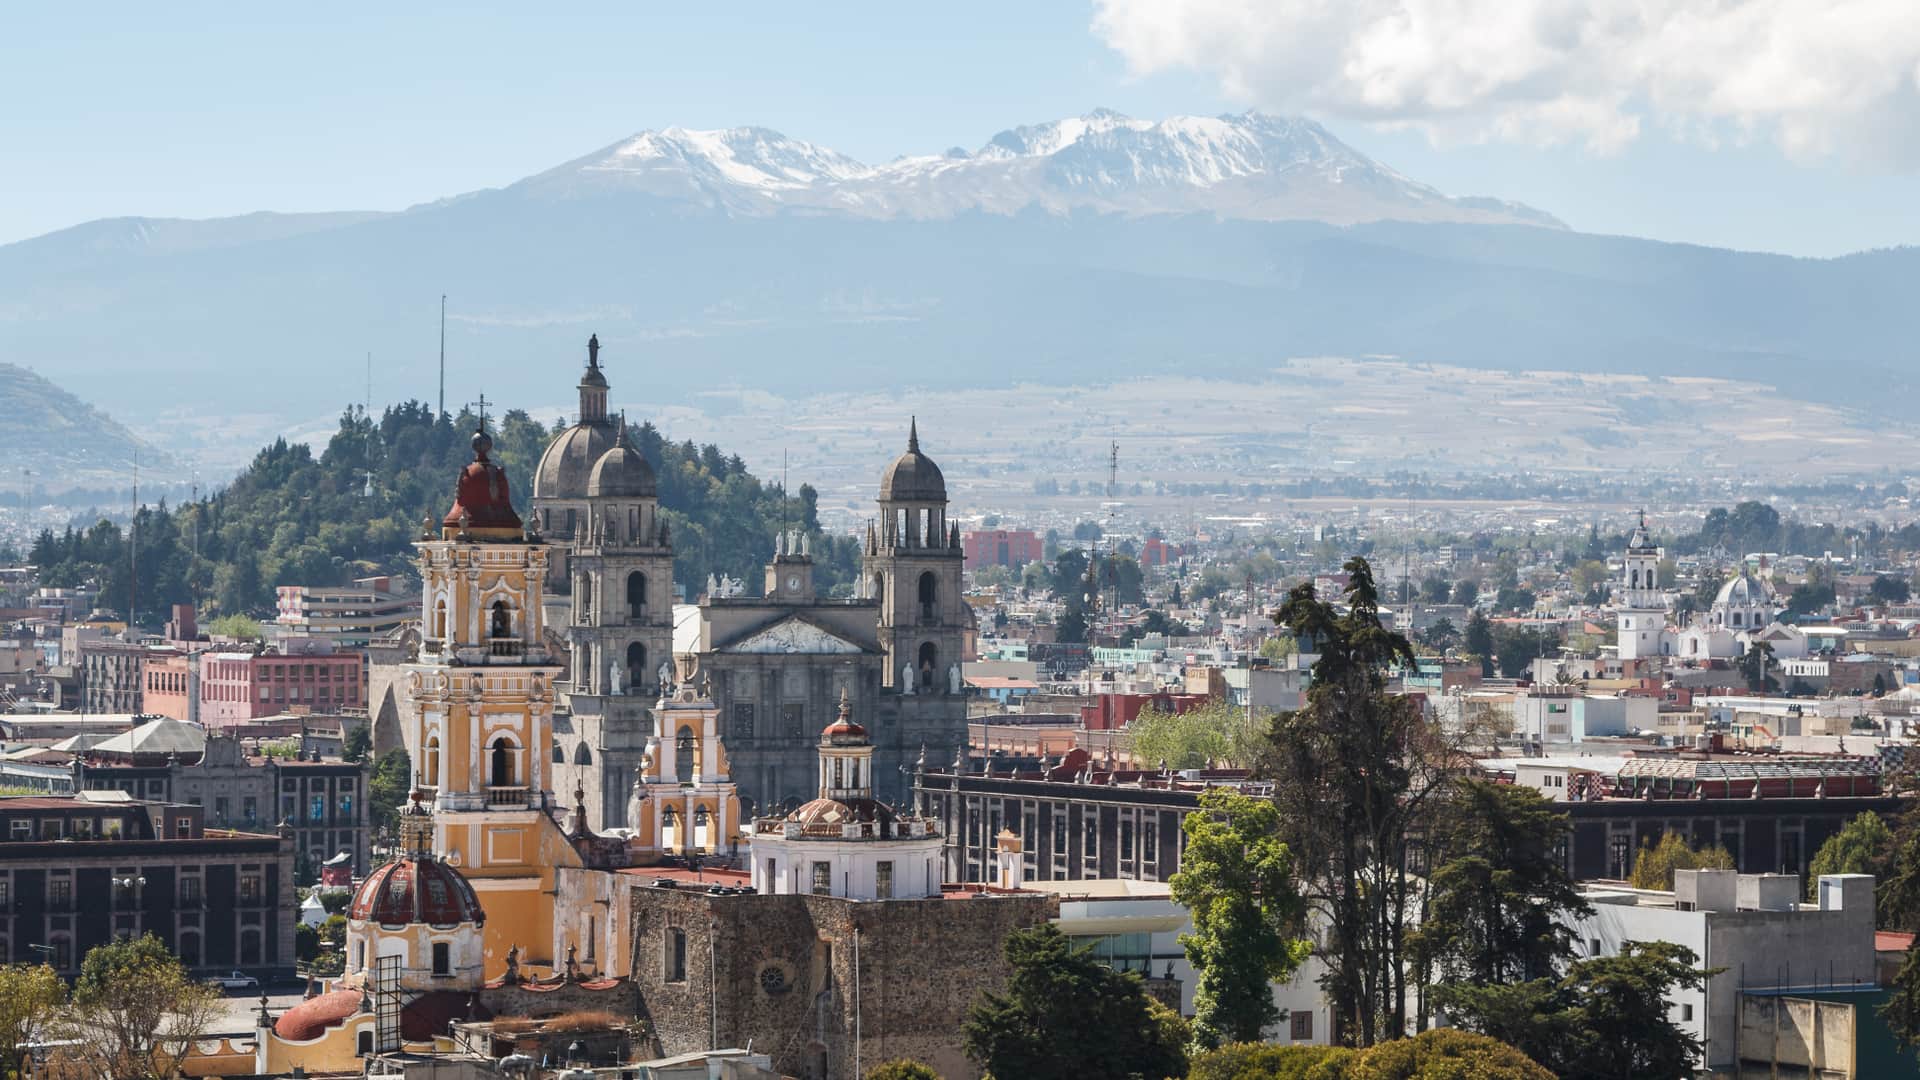 vista aerea del casco historico de toluca para indicar las localidades con internet de mexico